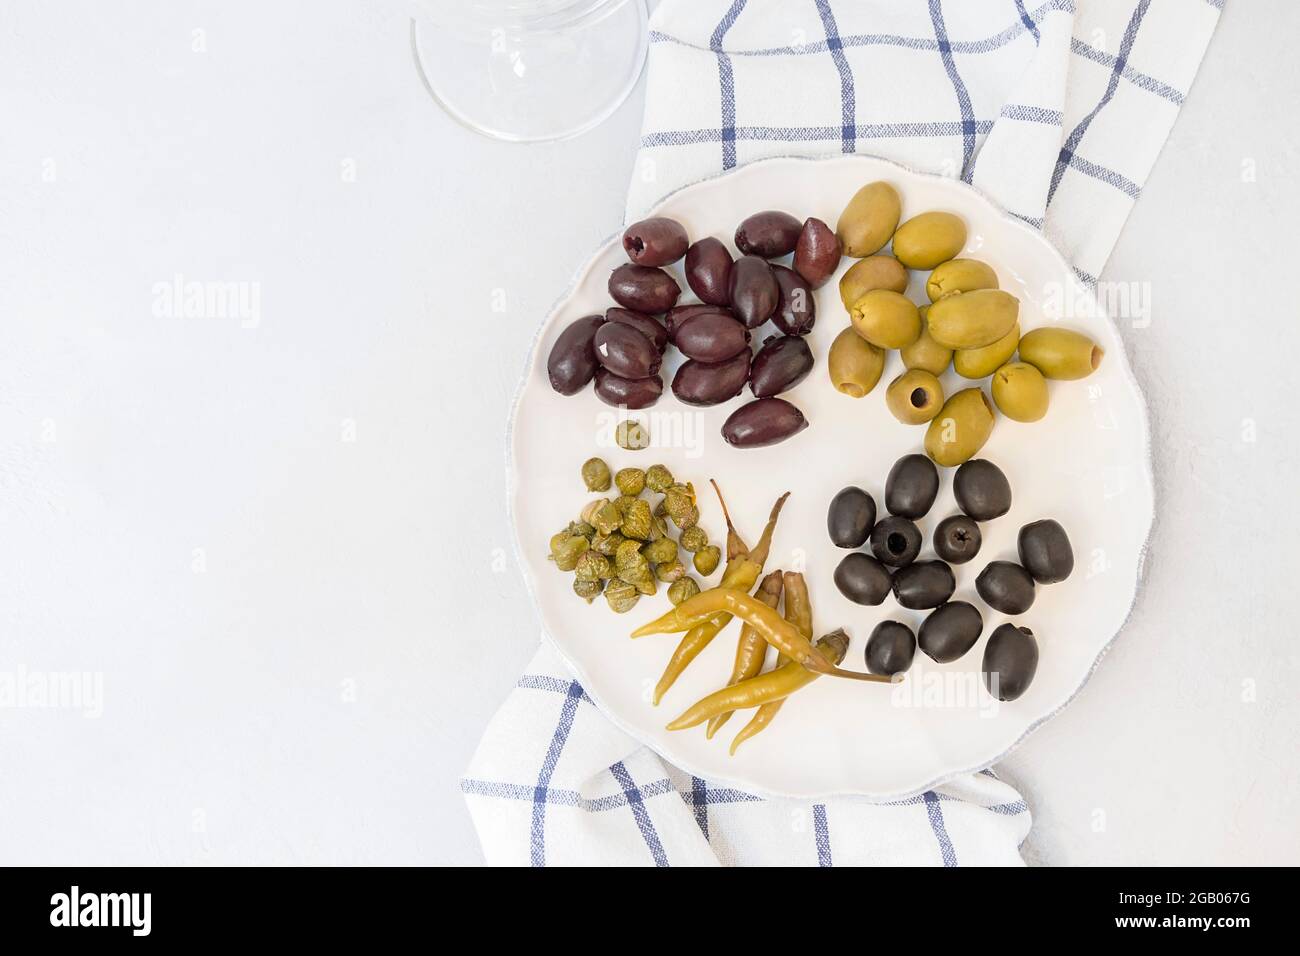 Antipasti italiani, diversi tipi di olive, capperi, peperoni, assortimento mediterraneo di cibi deliziosi, spuntini enologici Foto Stock